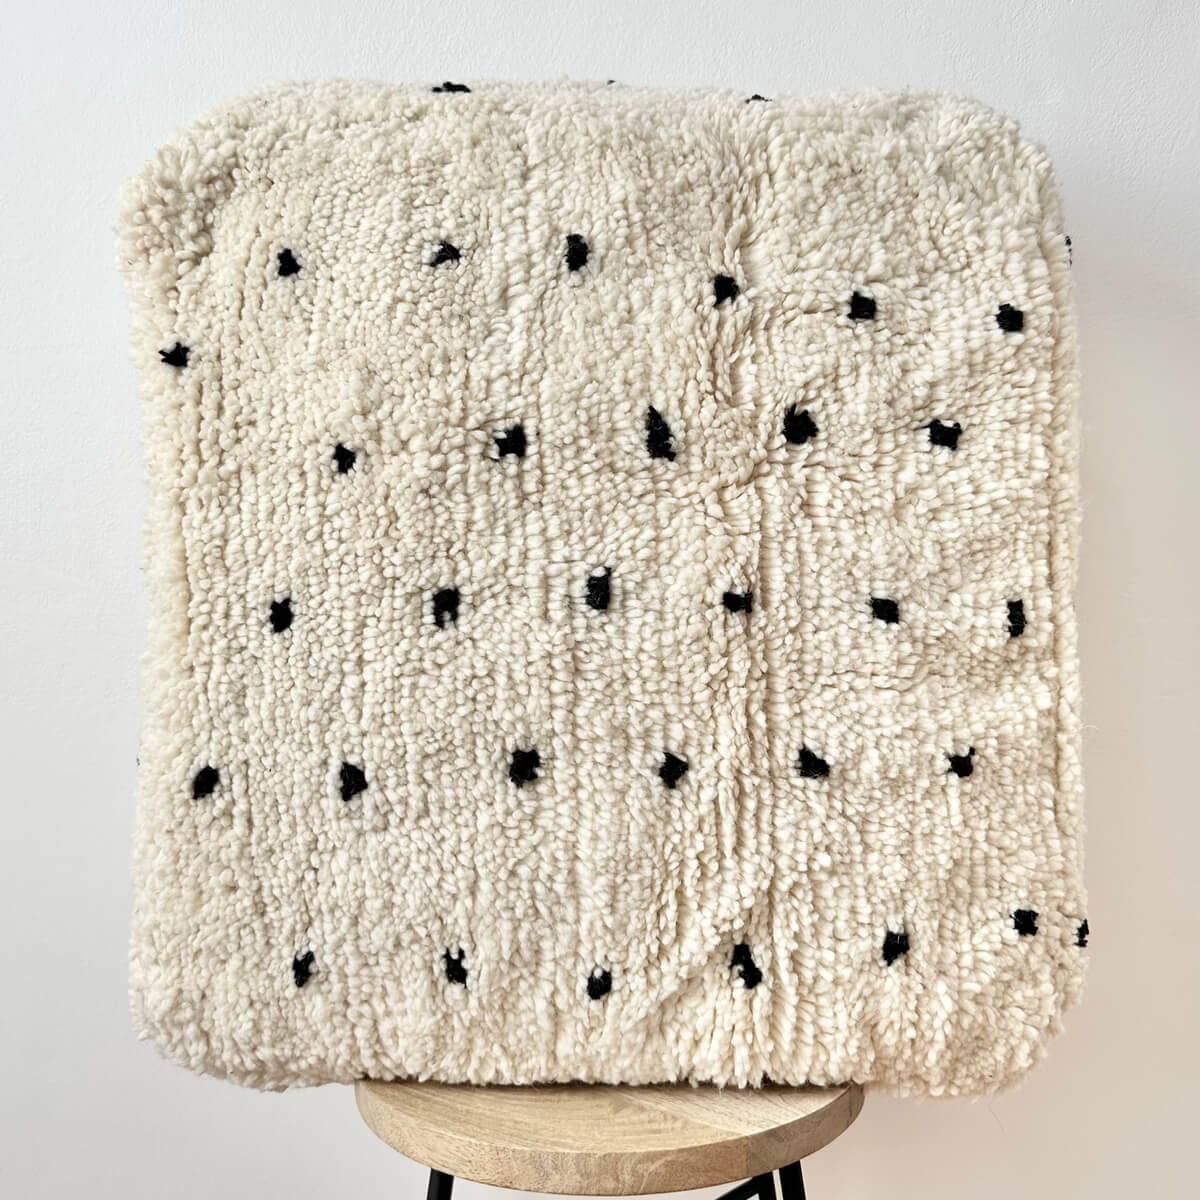 Perna de Podea Marocana din lana berber model cu buline negre